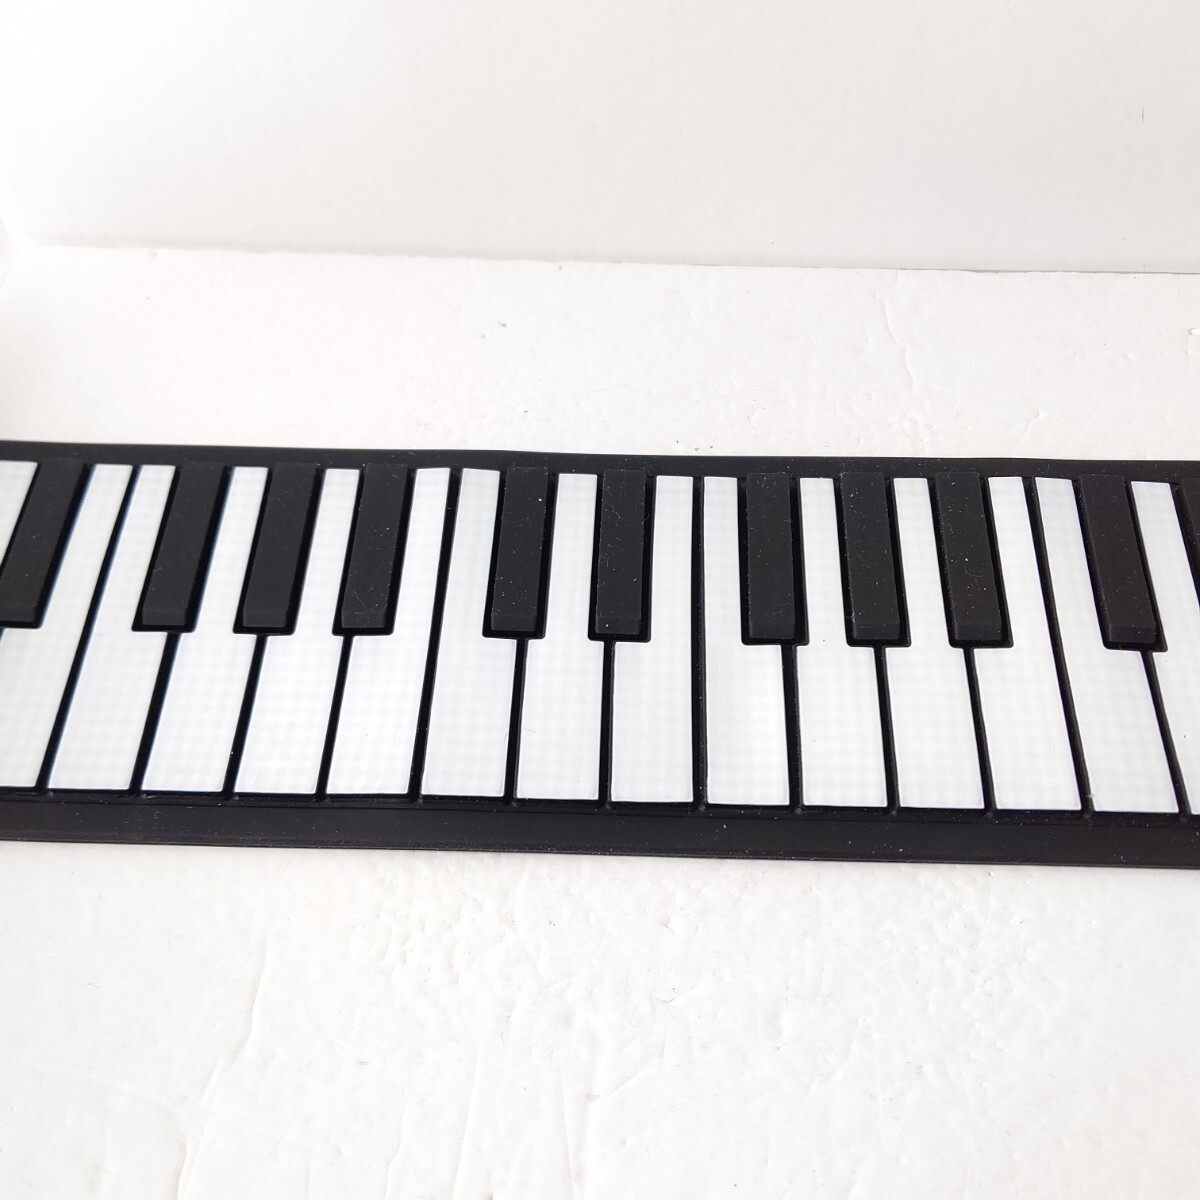 49 клавиатура сворачивающееся пианино smaly 49key прекрасный товар sa stain запись функция 